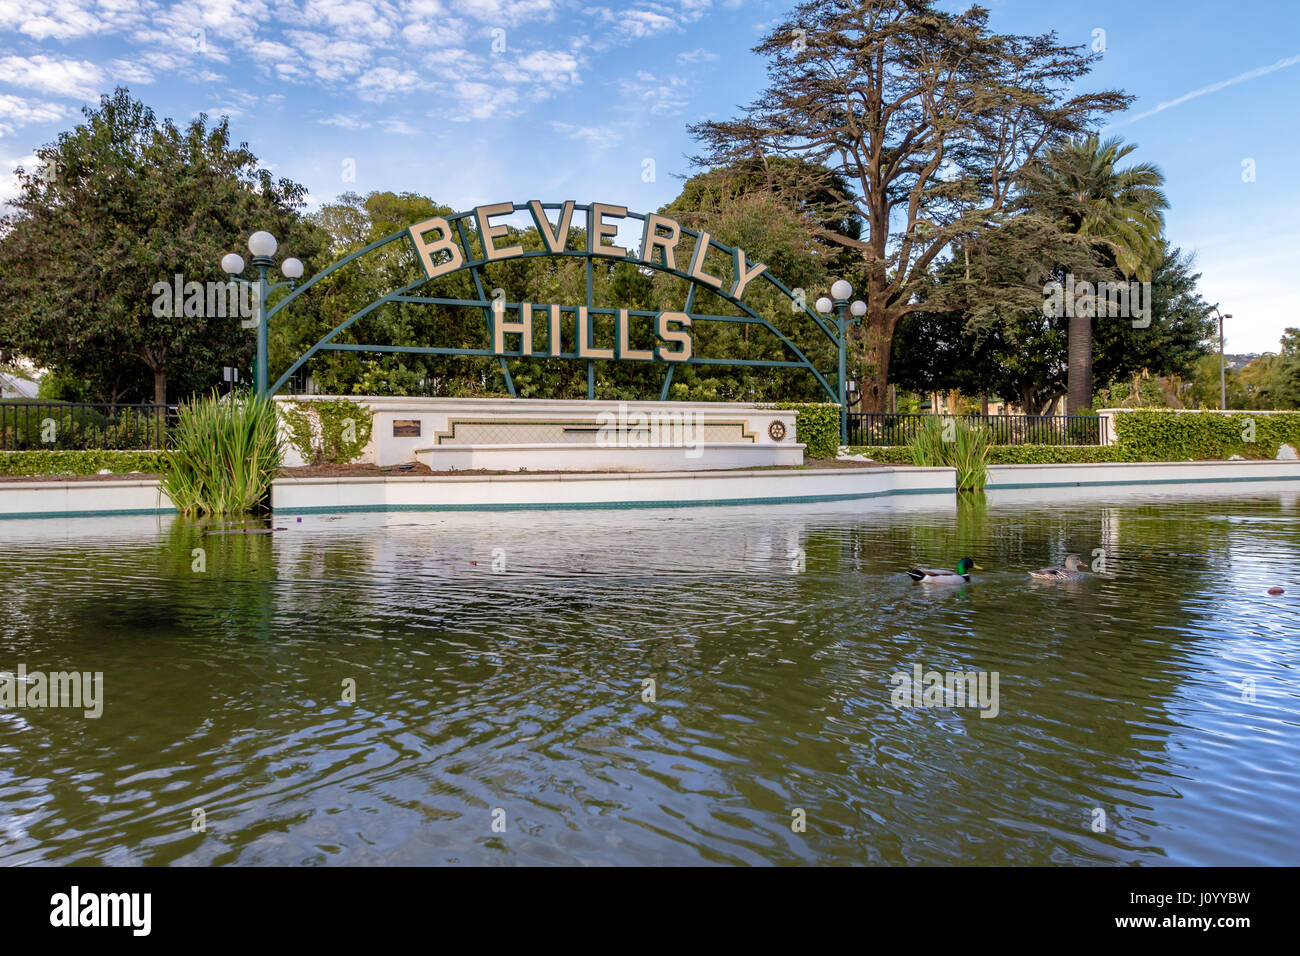 Berverly Hills-Schild - Los Angeles, Kalifornien, USA Stockfoto